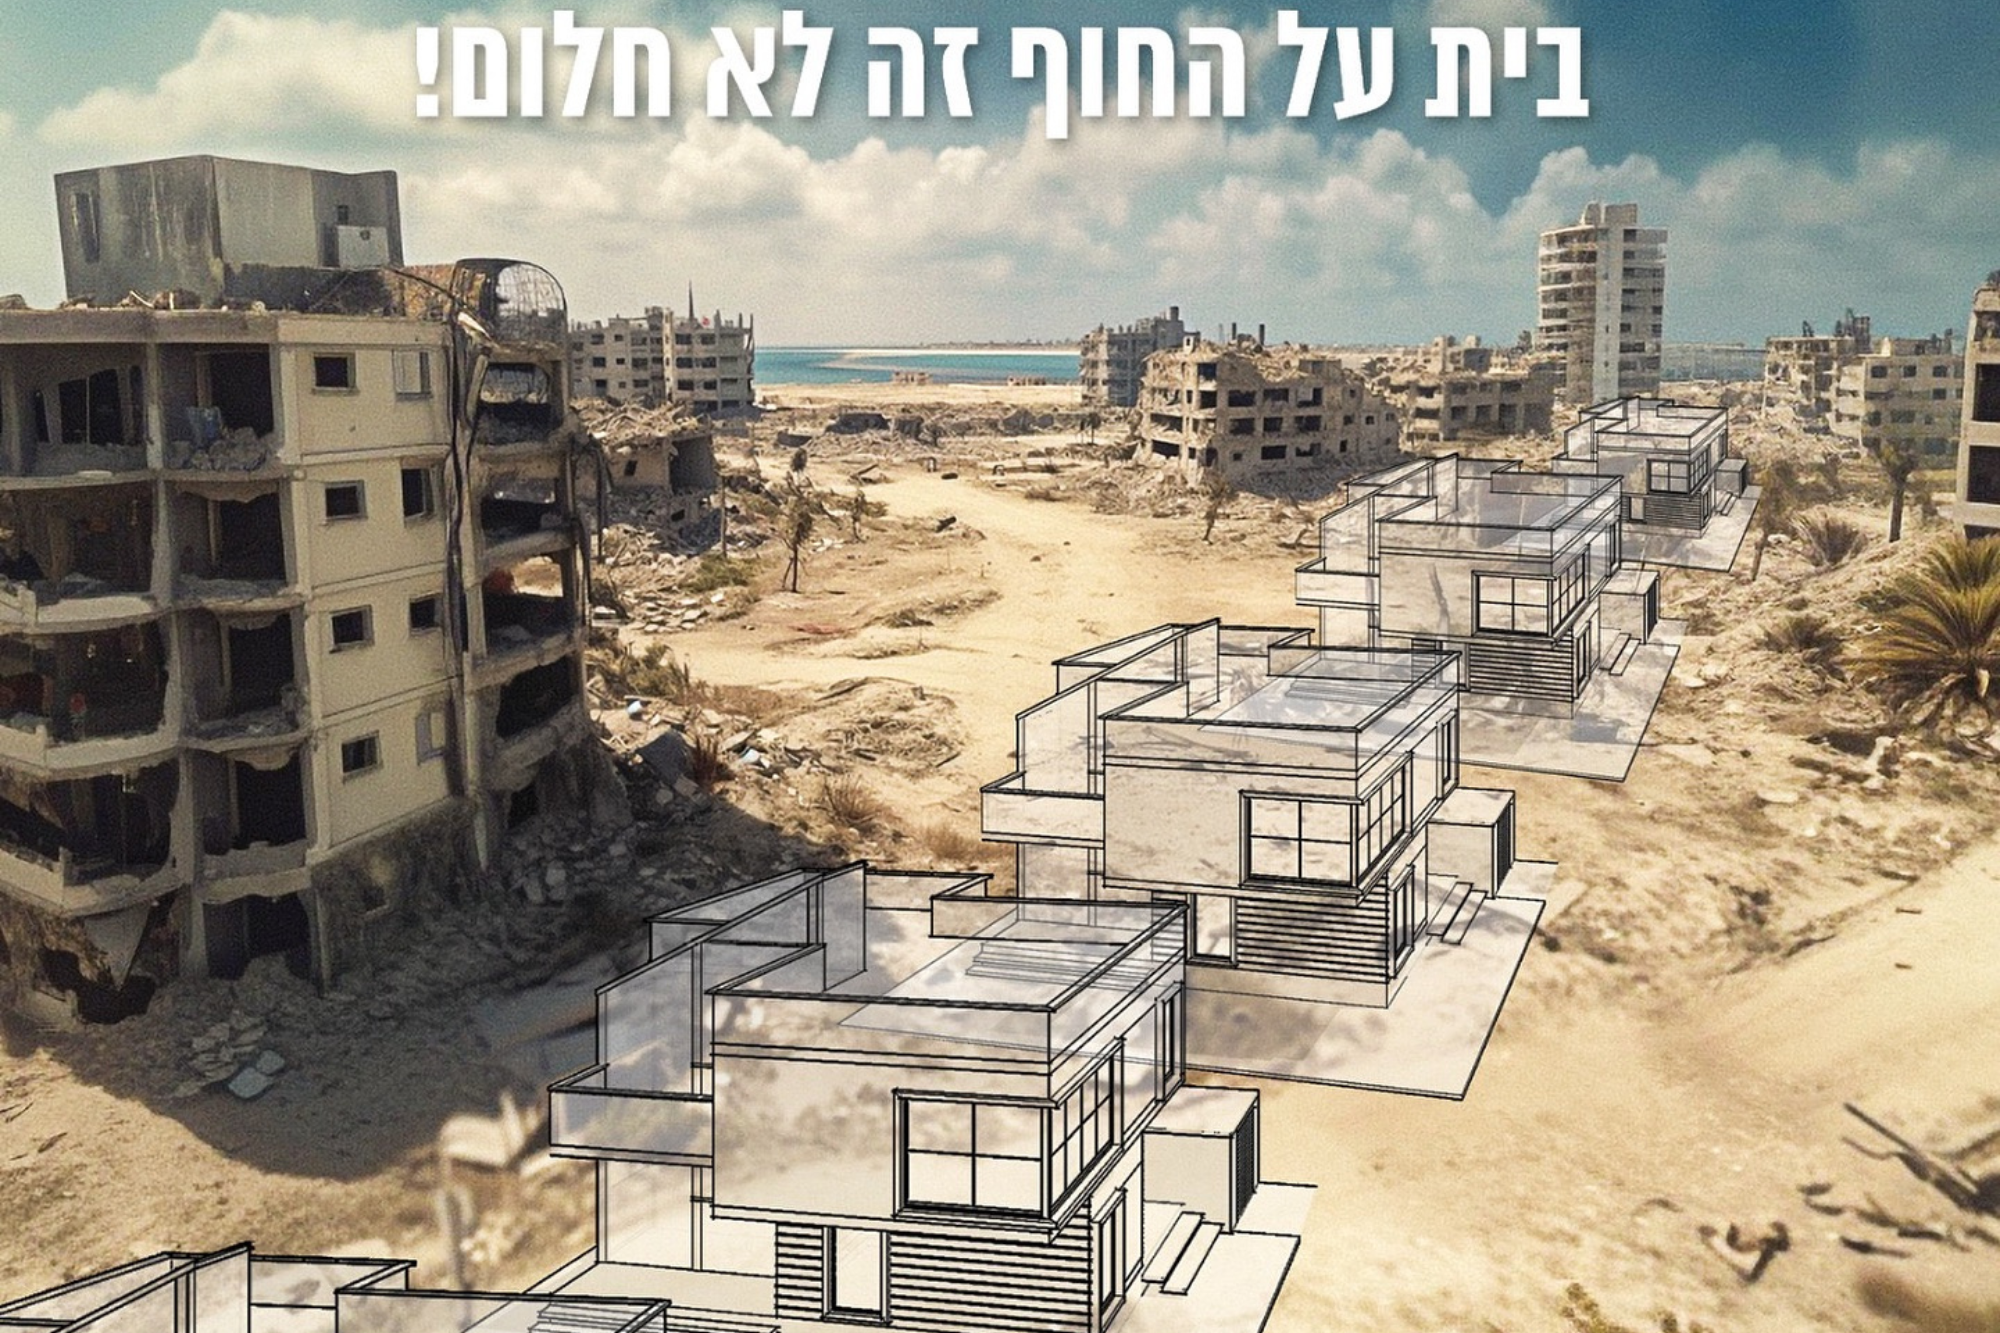 ¿Una empresa inmobiliaria israelí anunció la venta de casas en Gaza?  Sí, pero dice que fue una “broma” |  Parcialmente cierto